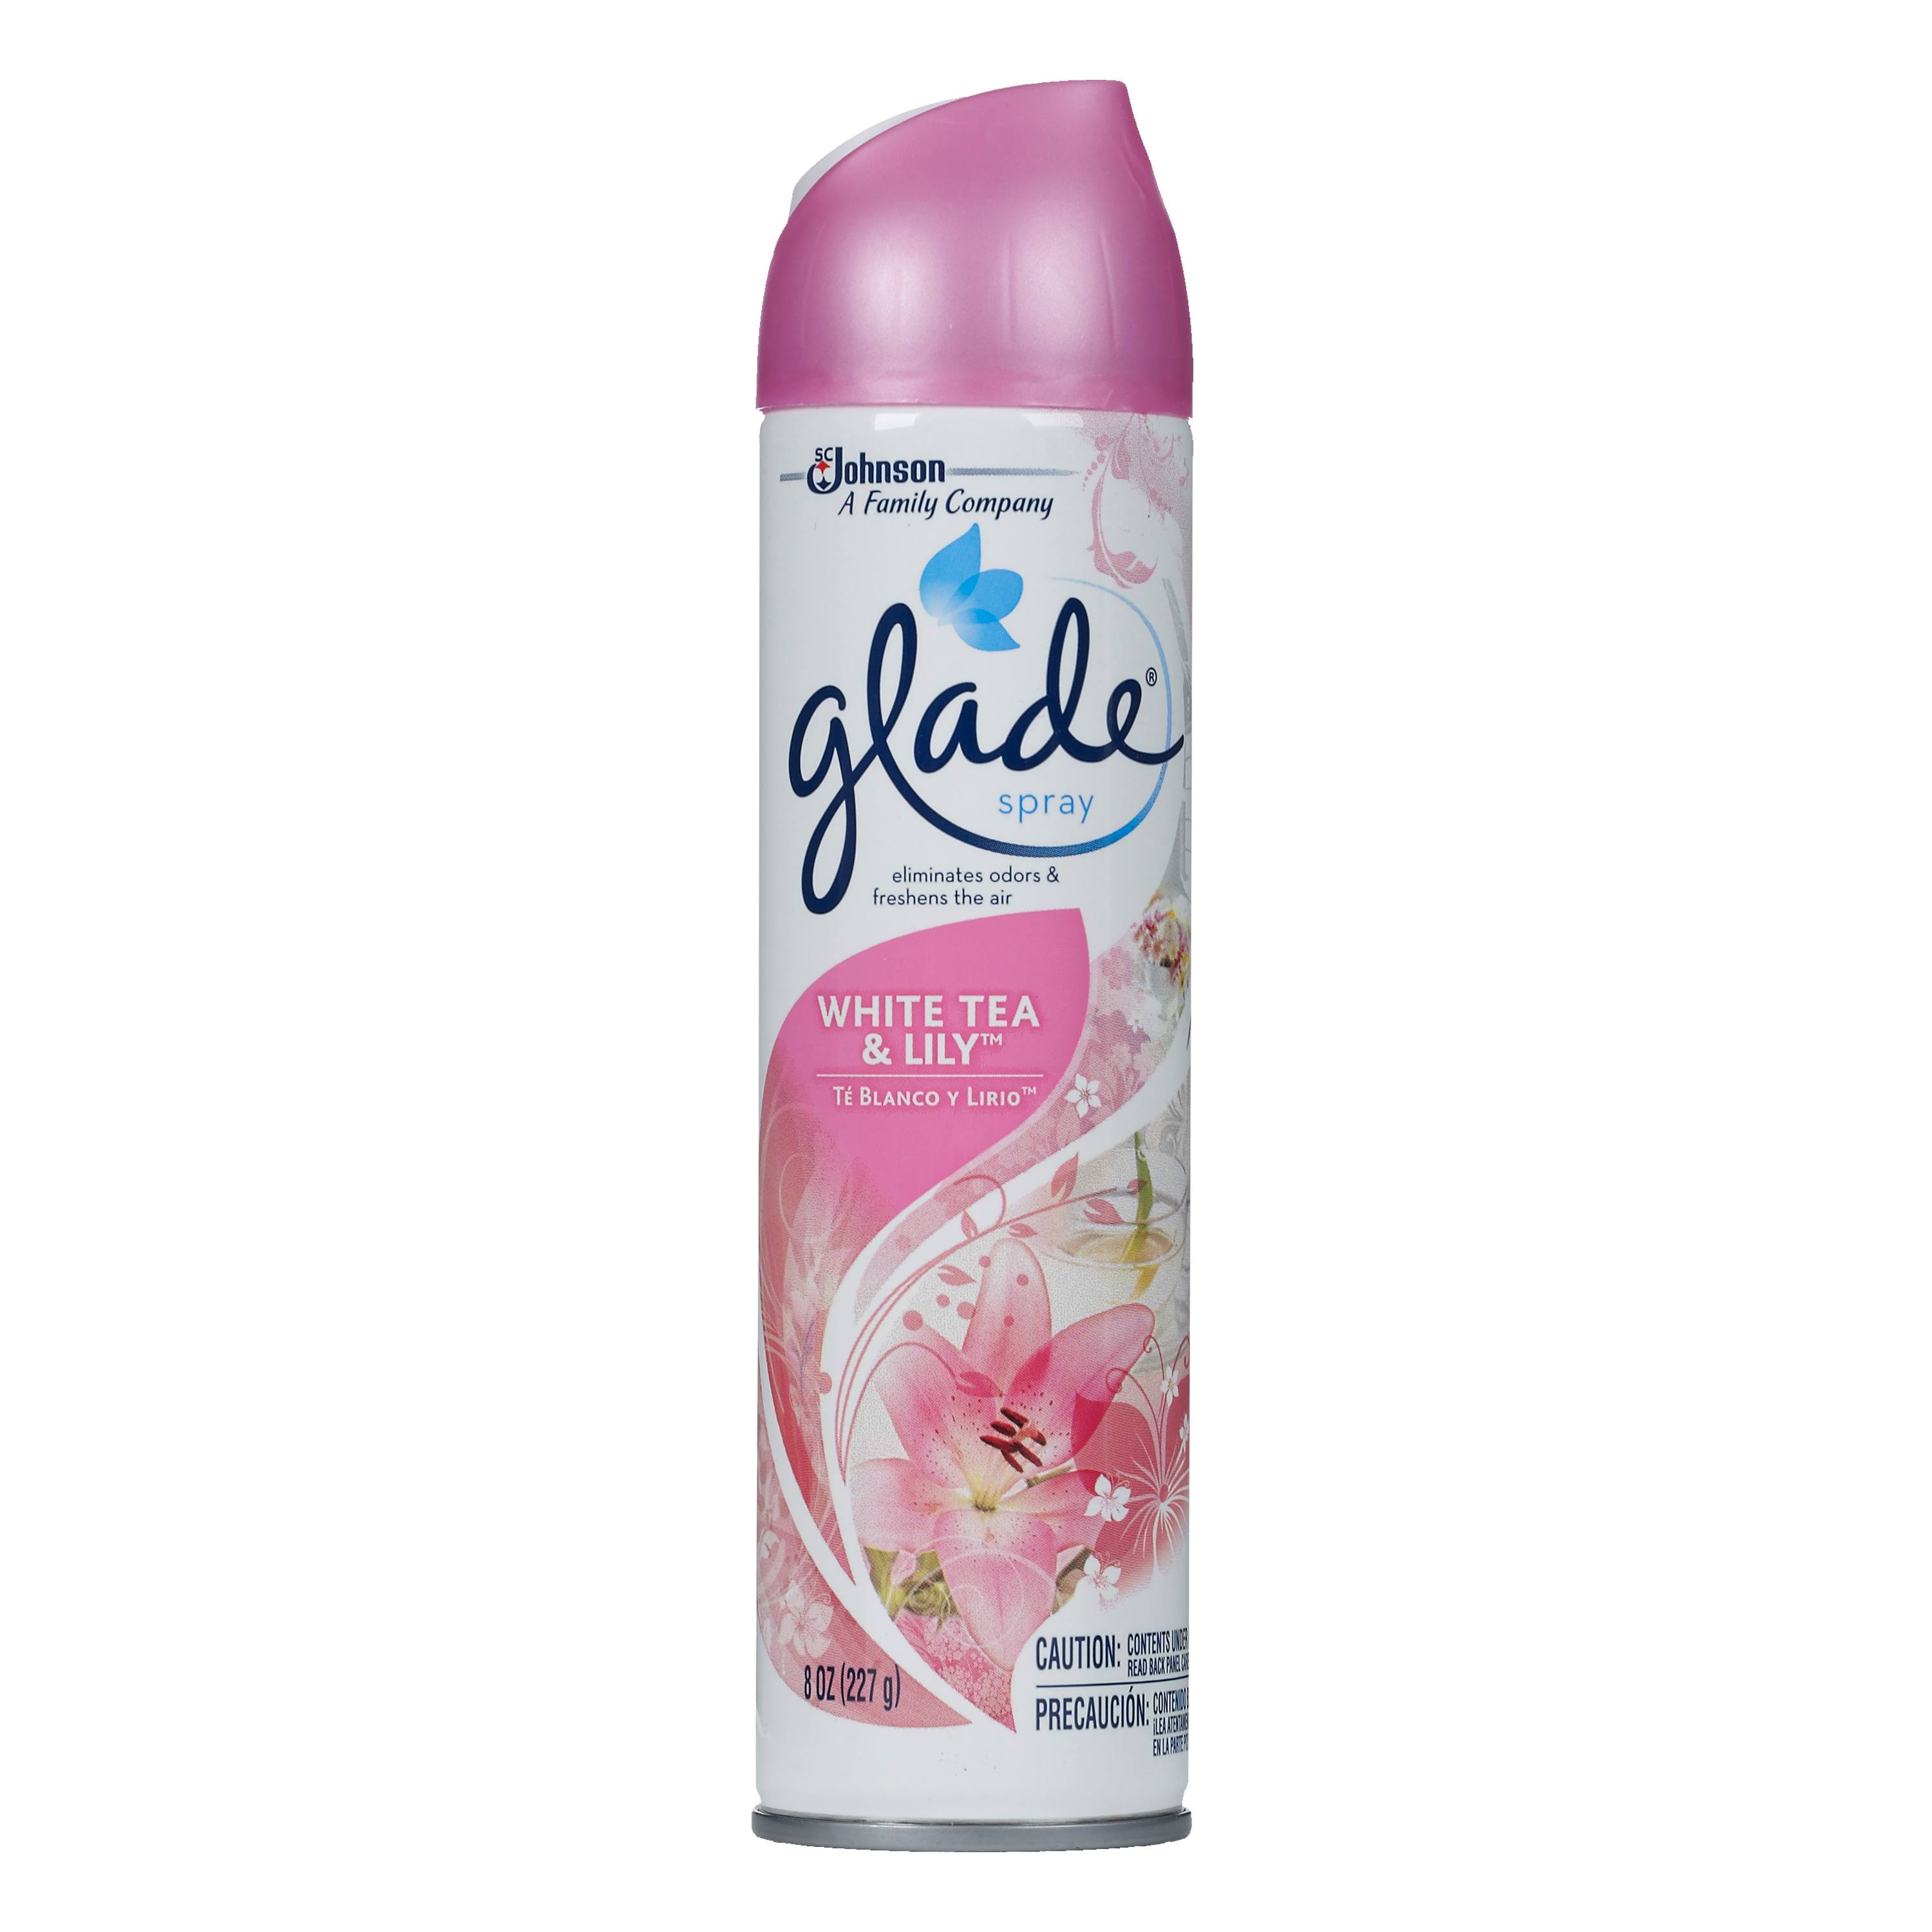 Glade white tea & lily spray 8oz